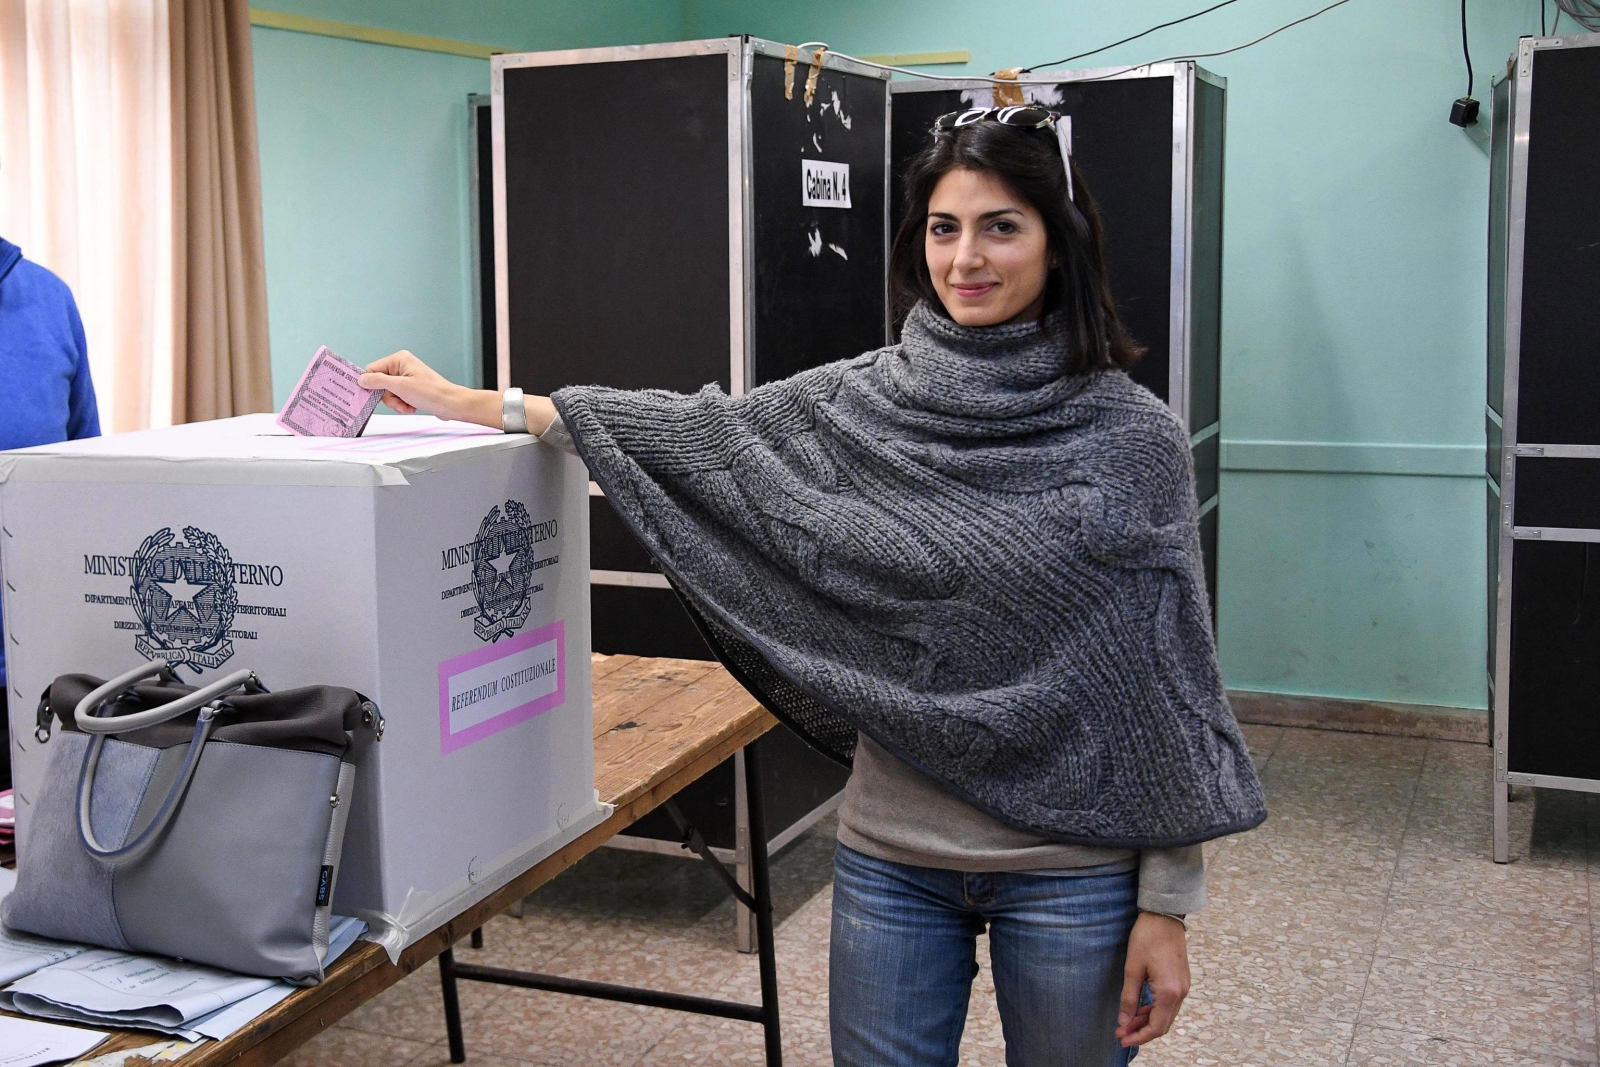 Burmistrz Rzymu Virginia Raggi oddaje głos w referendum konstytucyjnym we Włoszech.